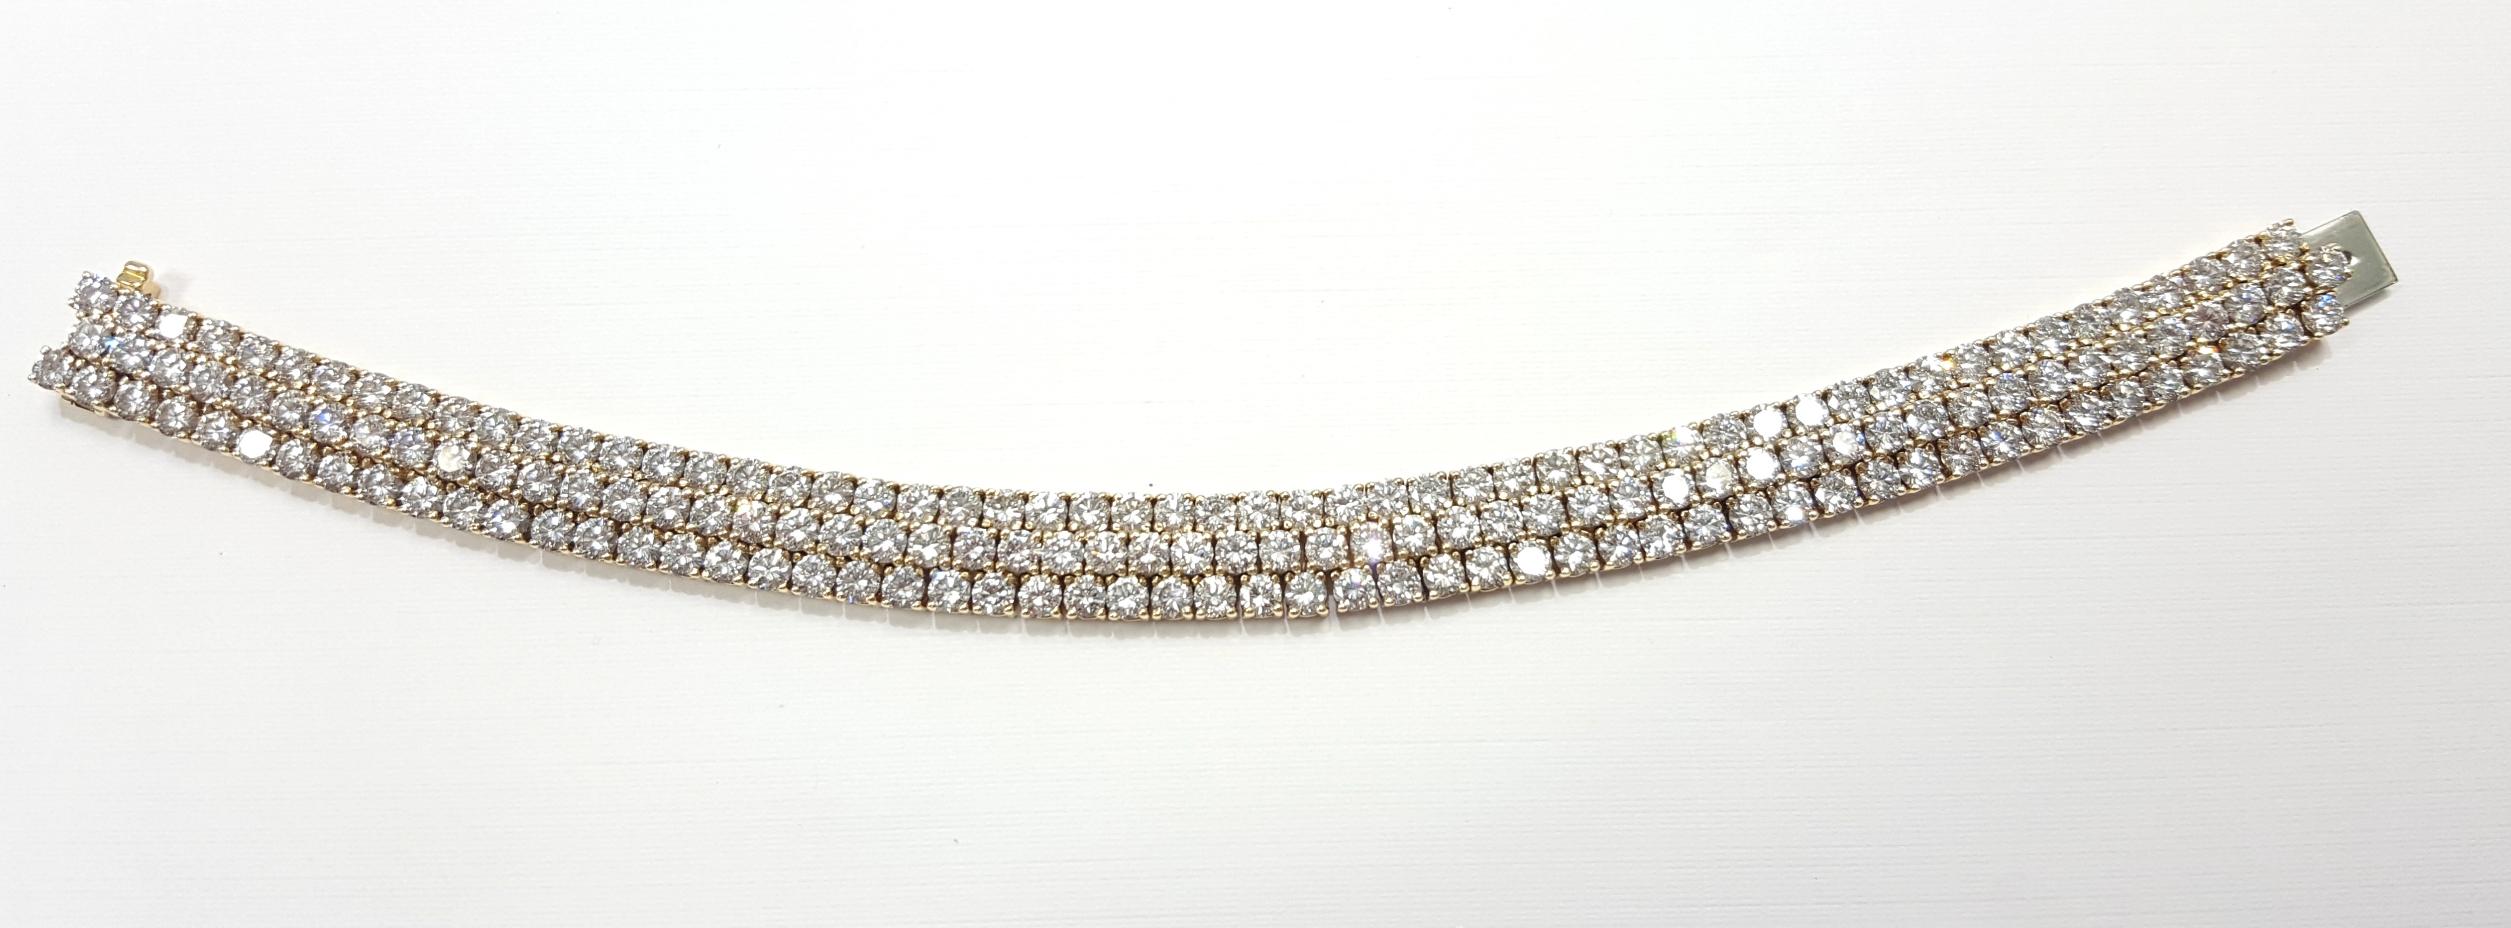 Round Cut Diamond Bracelet 20 Carat For Sale